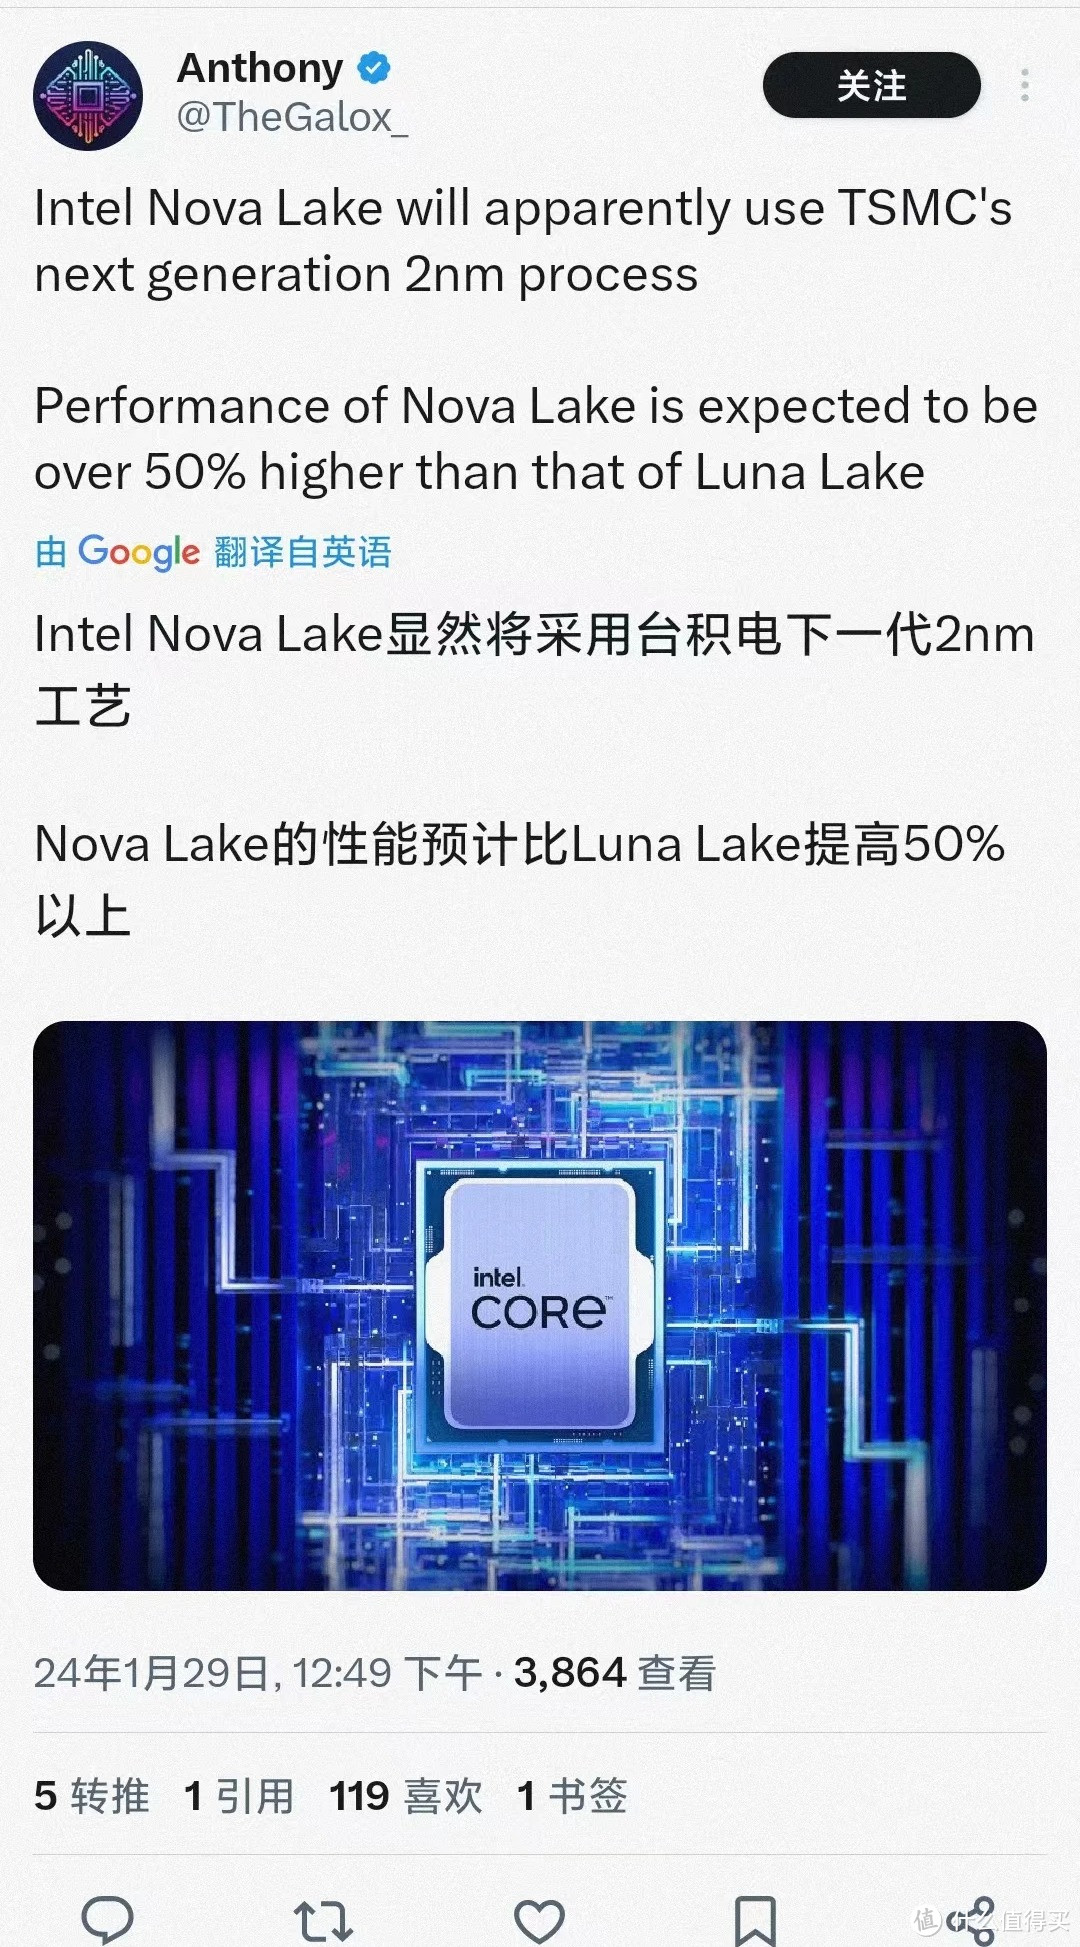 网传 | 消息称 intel Nova Lake 处理器将用台积电 2nm 工艺，性能想比 Lunar Lake 提高 50%